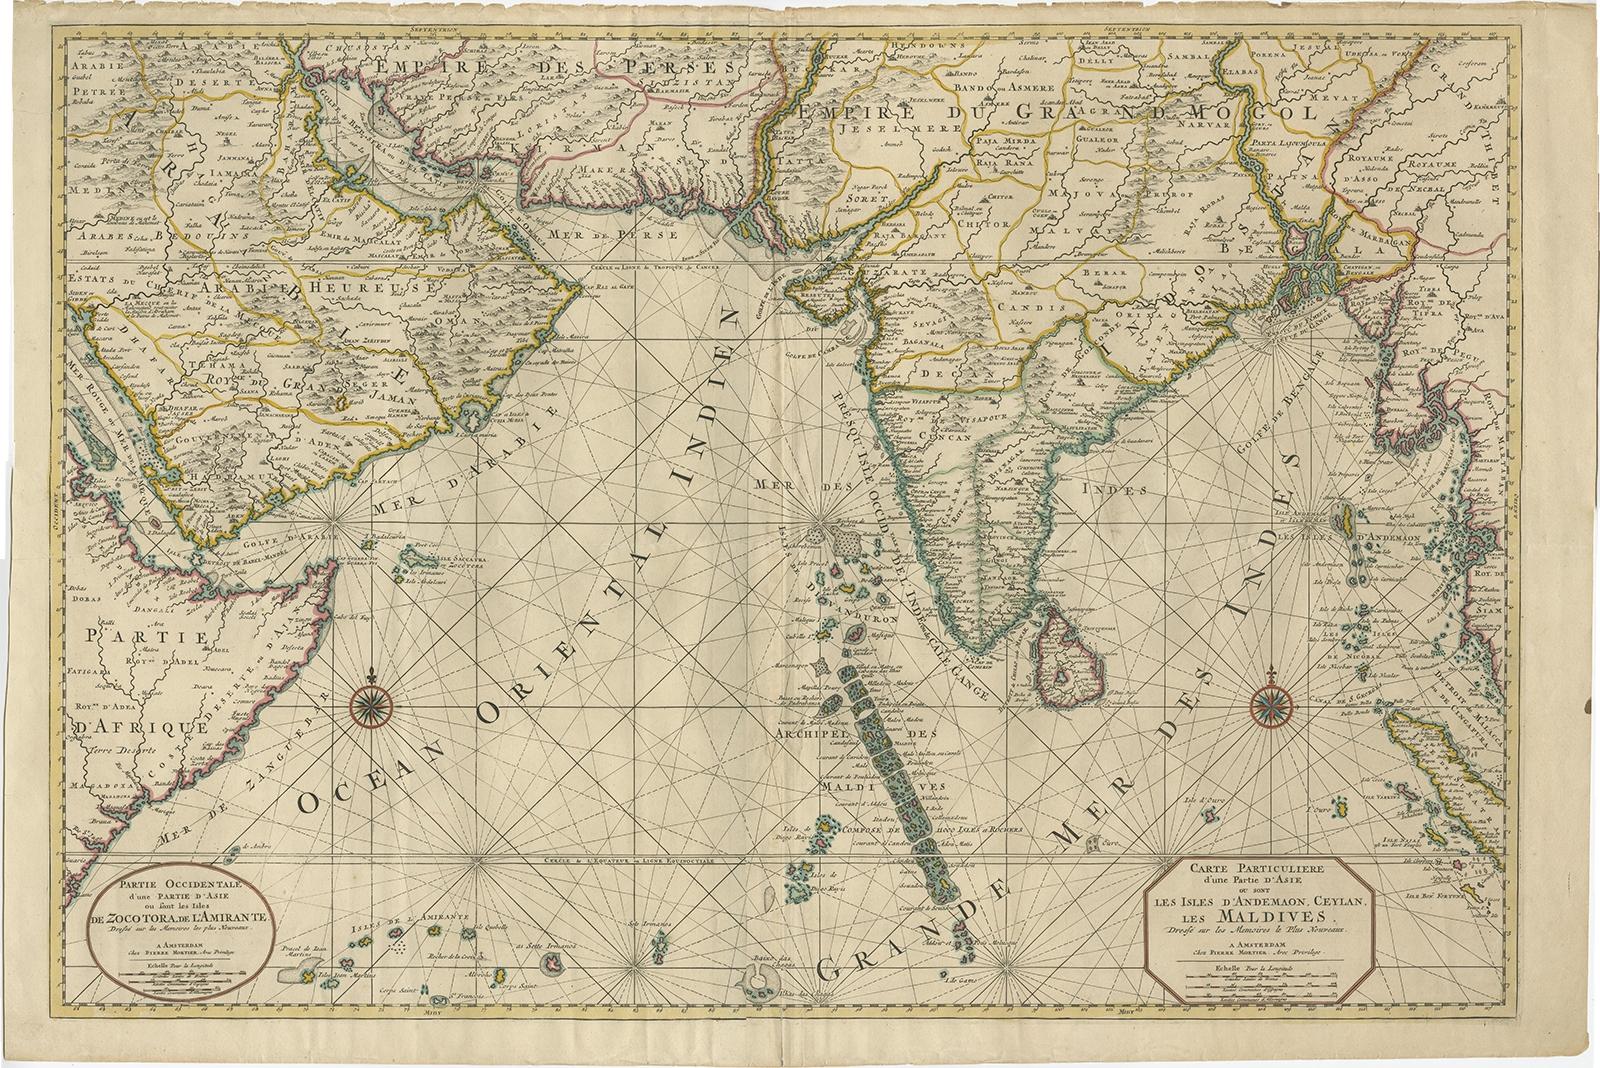 Superbe carte ancienne de l'Asie.

Description : Carte de l'Asie en deux feuilles, jointes. La partie gauche de cette carte ancienne est intitulée 